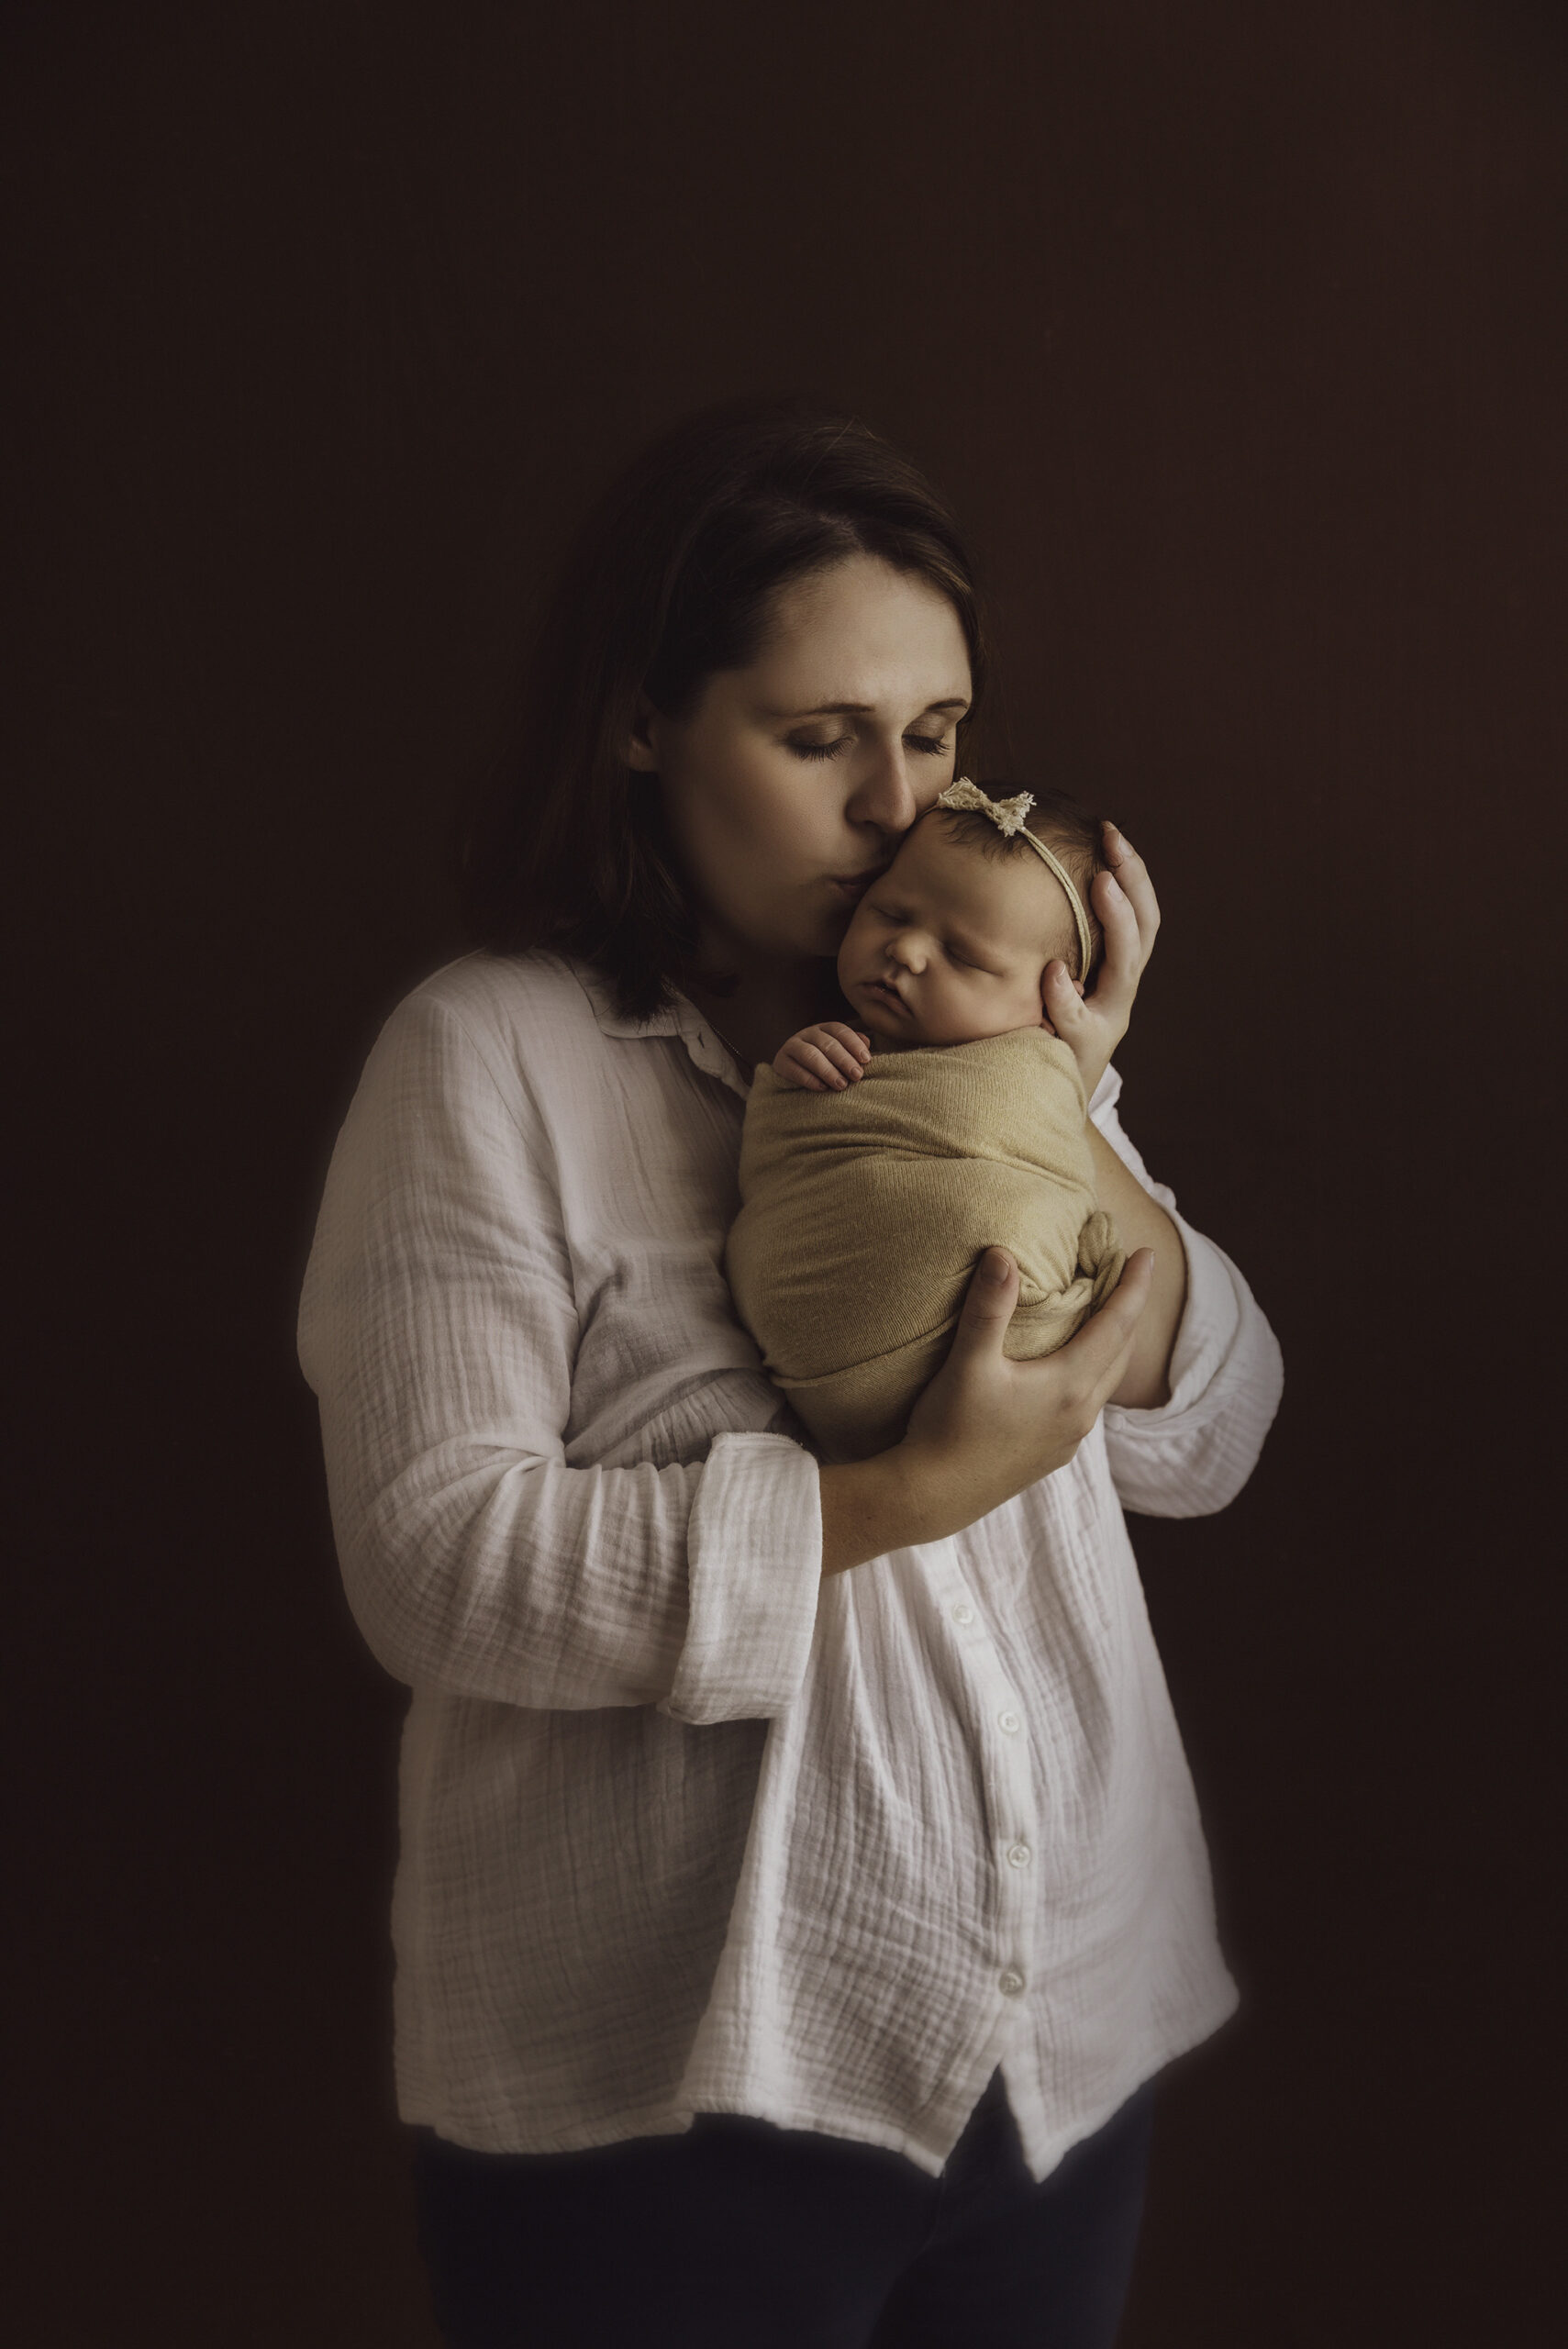 séance naissance - portrait parent - maman - formation photographe nouveau-né - workshop - newborn - One Moment Photographie - 561 copie